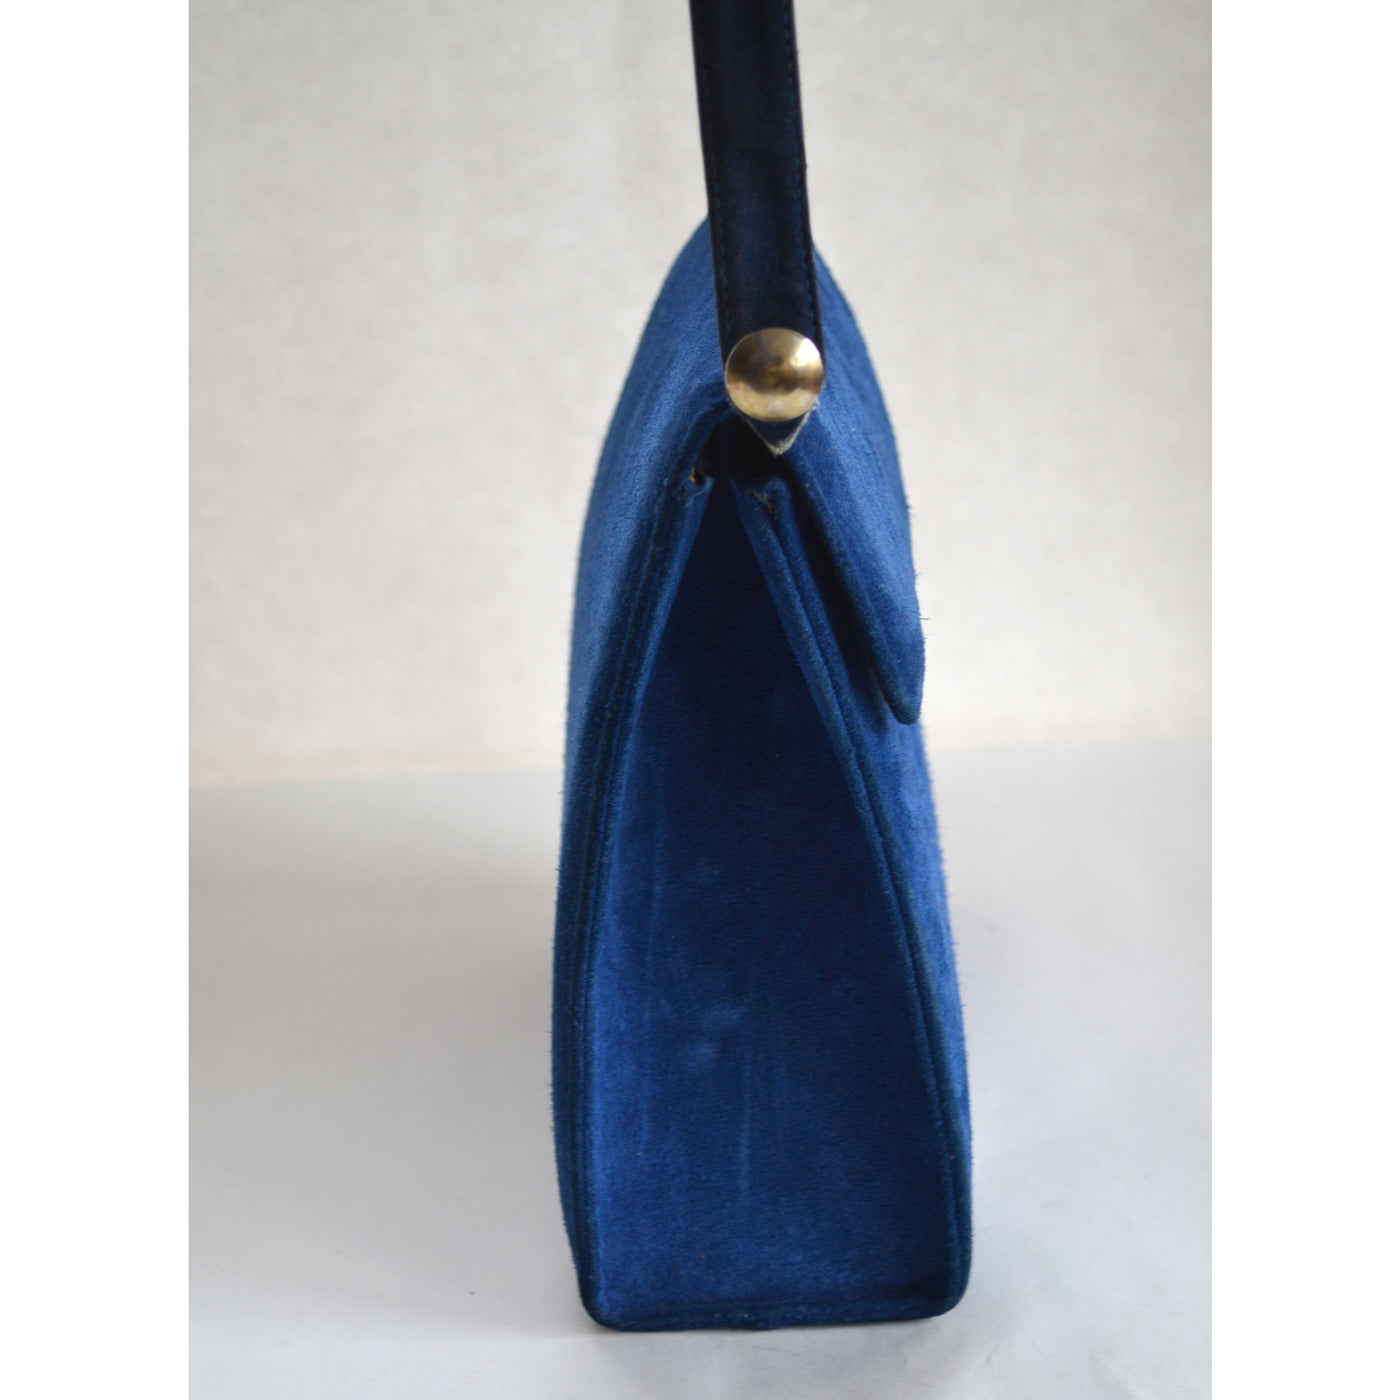 Salvatore Ferragamo Navy Blue Suede Handbag Purse (21-3107/28) | eBay